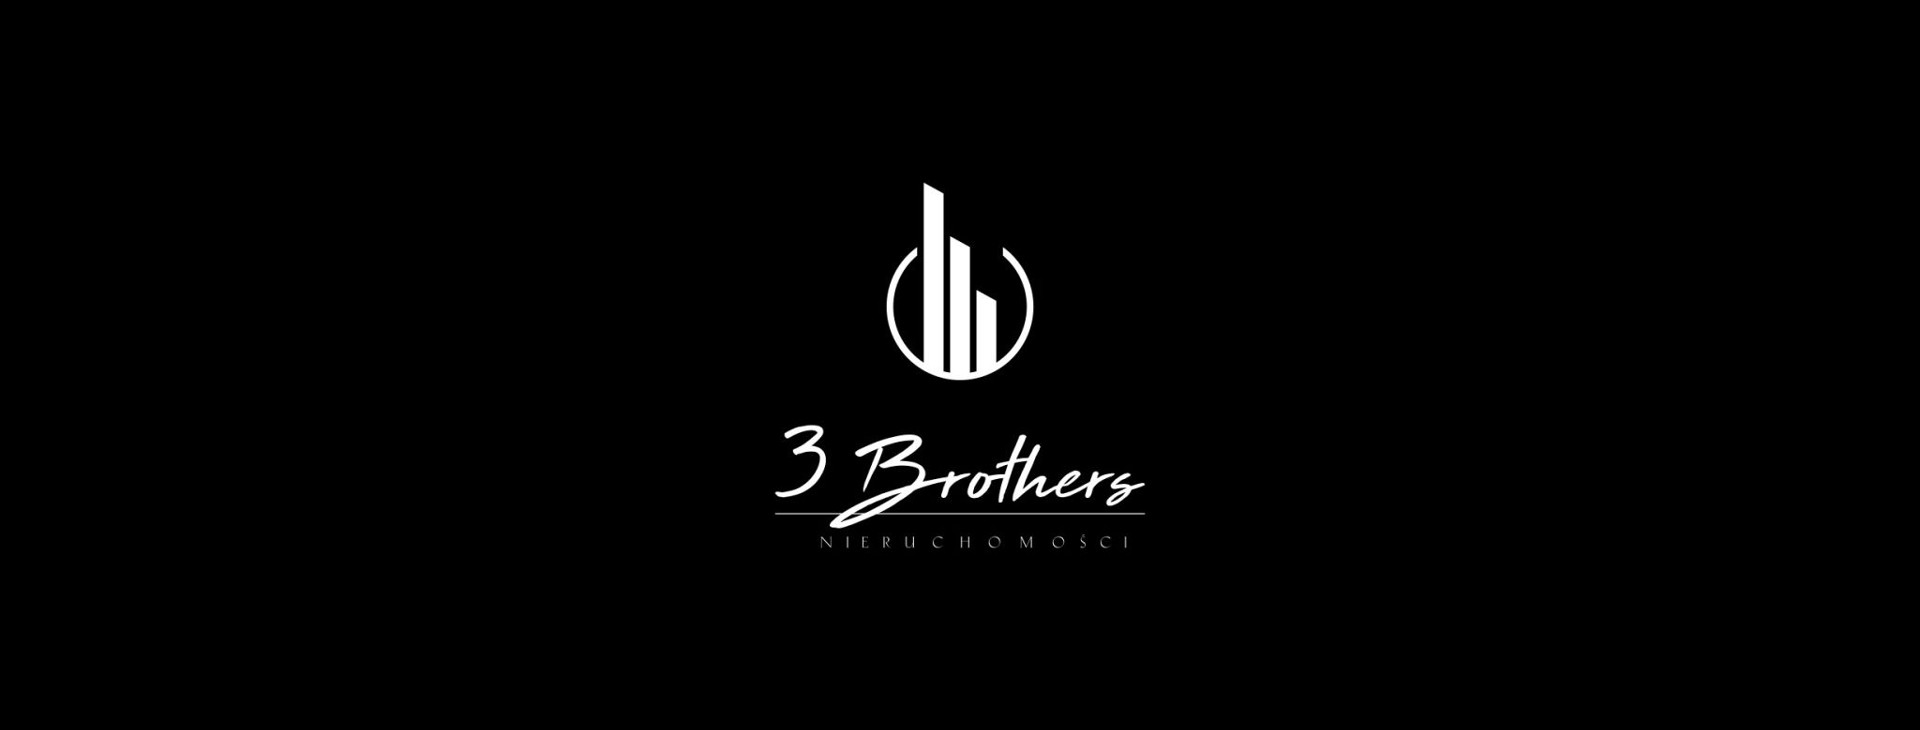 3 Brothers - Nieruchomości logo